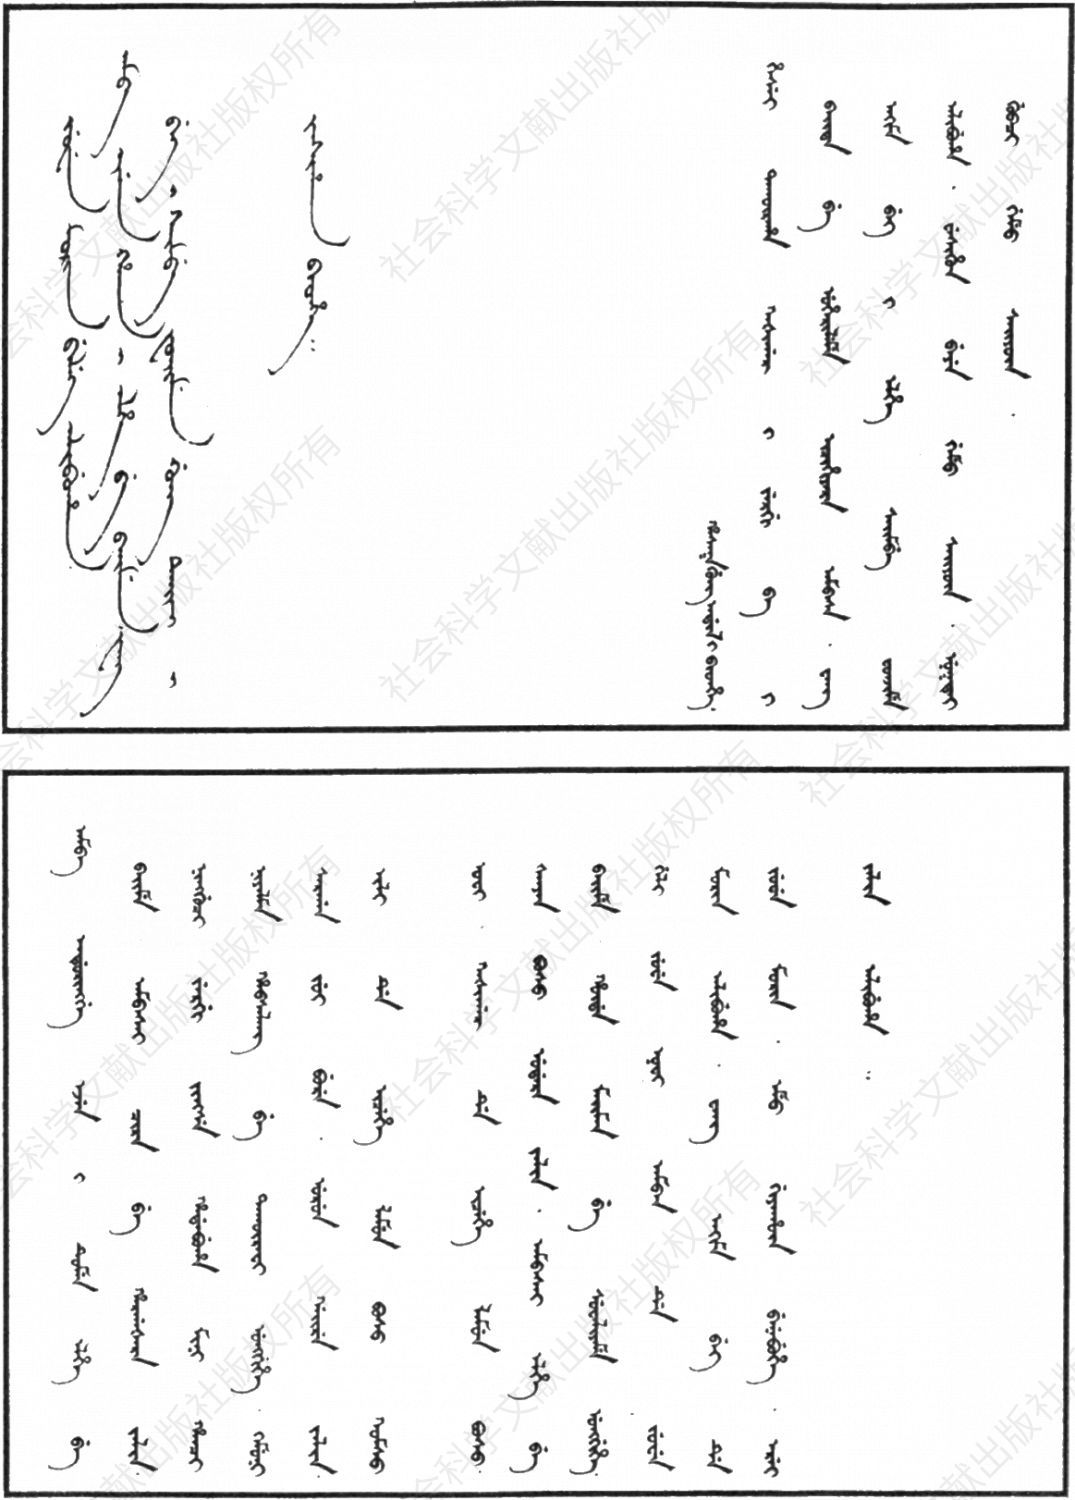 圖3 1808年哈薩克蘇勒坦阿第勒致喀什噶爾參贊大臣察合臺文信件之滿文譯件